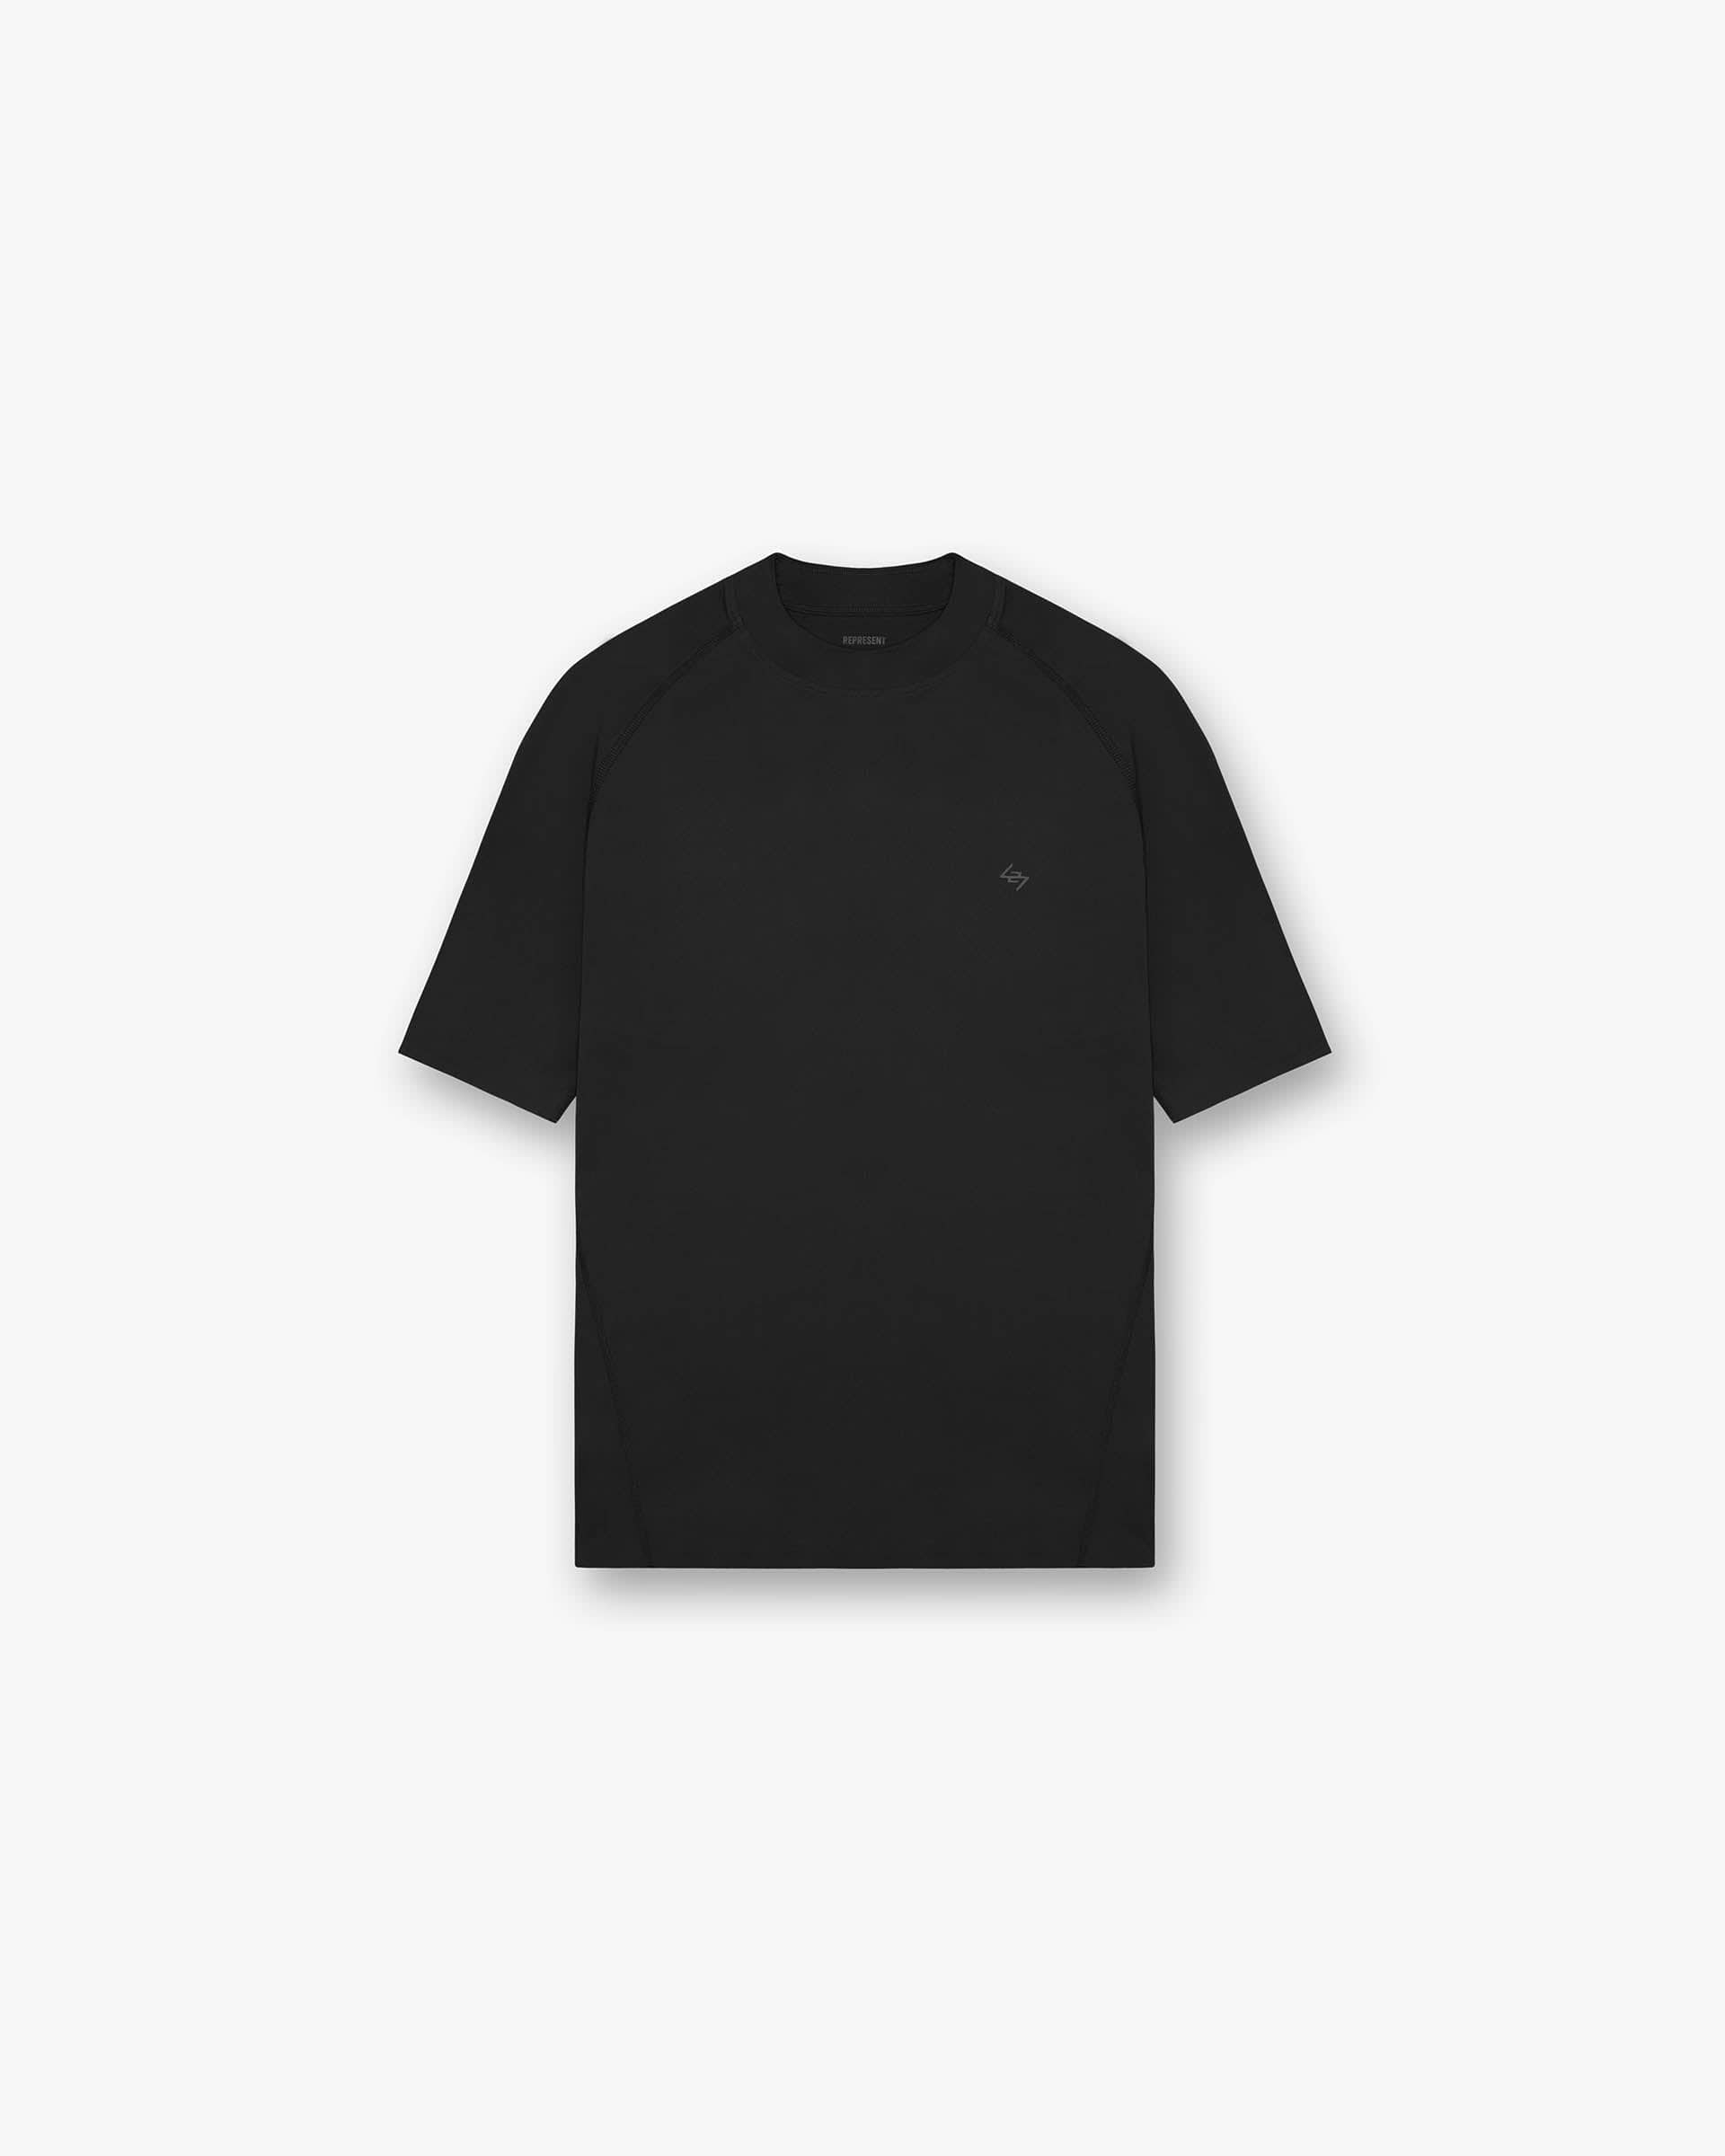 247 Compound T-Shirt - Black